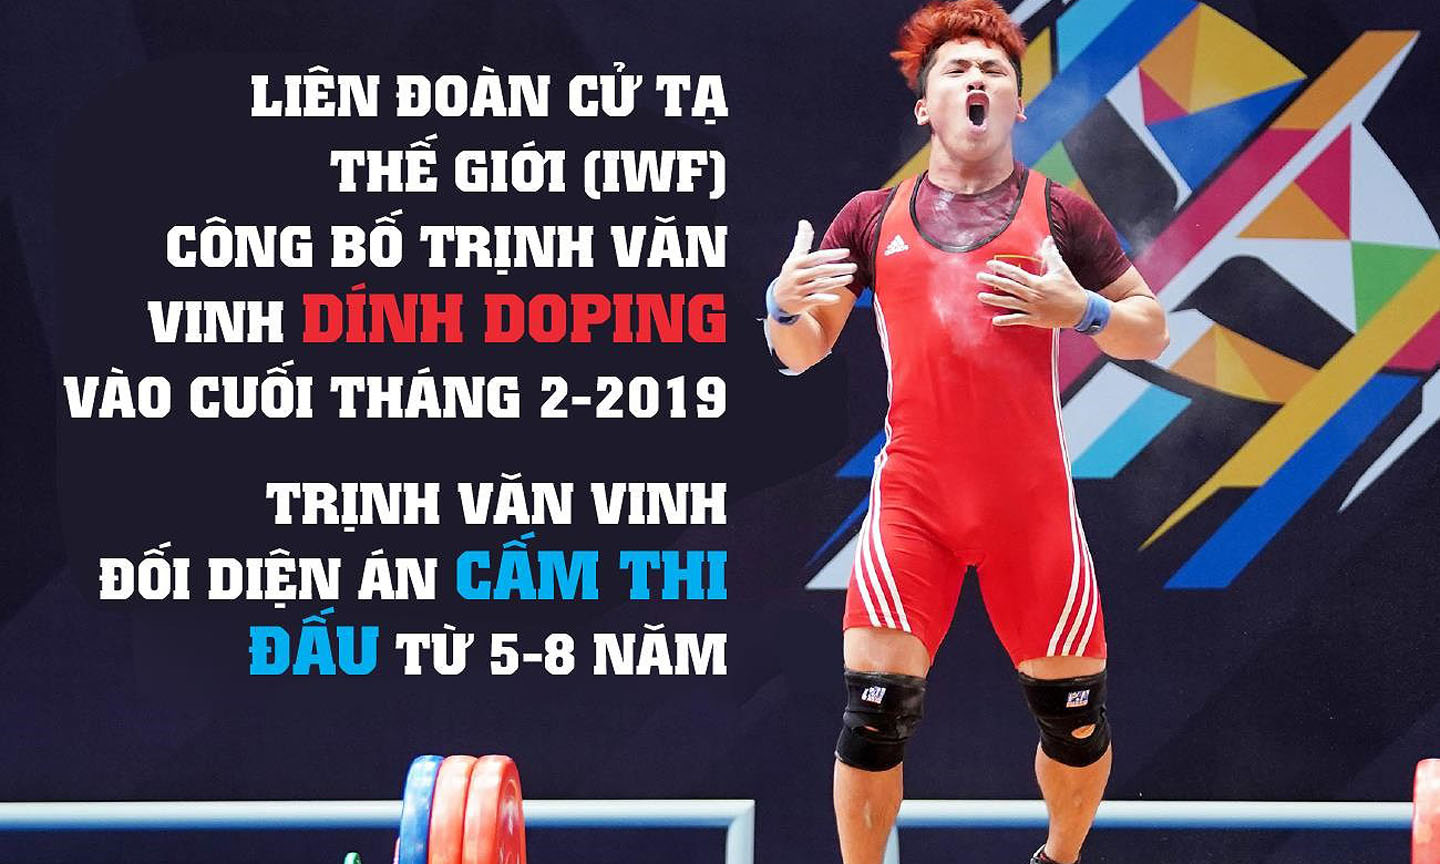 Cú sốc cho cử tạ Việt Nam: Nhà vô địch thế giới Trịnh Văn Vinh dính doping